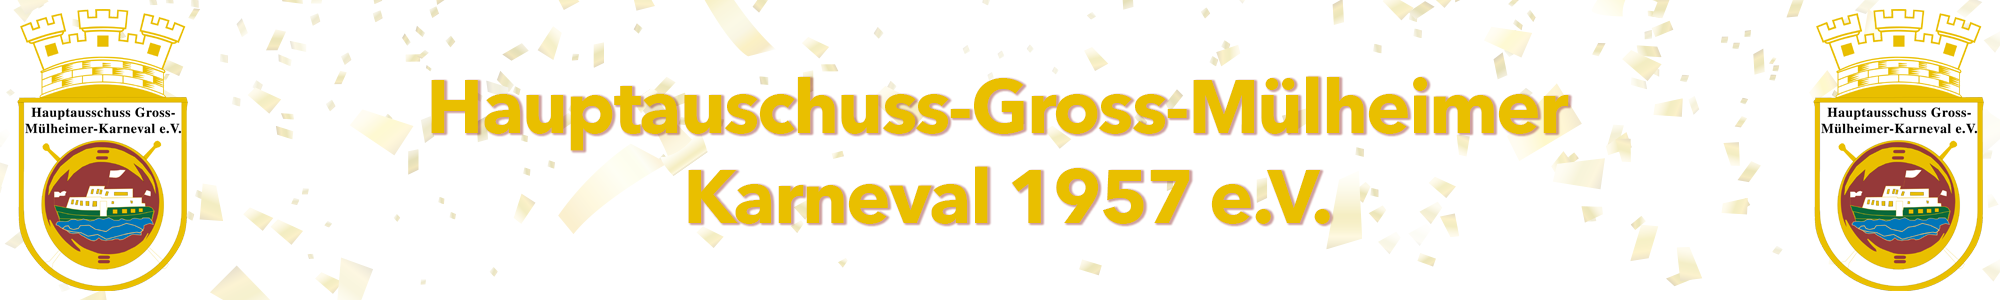 Hauptausschuss Gross-Mülheimer-Karneval 1957 e.V.